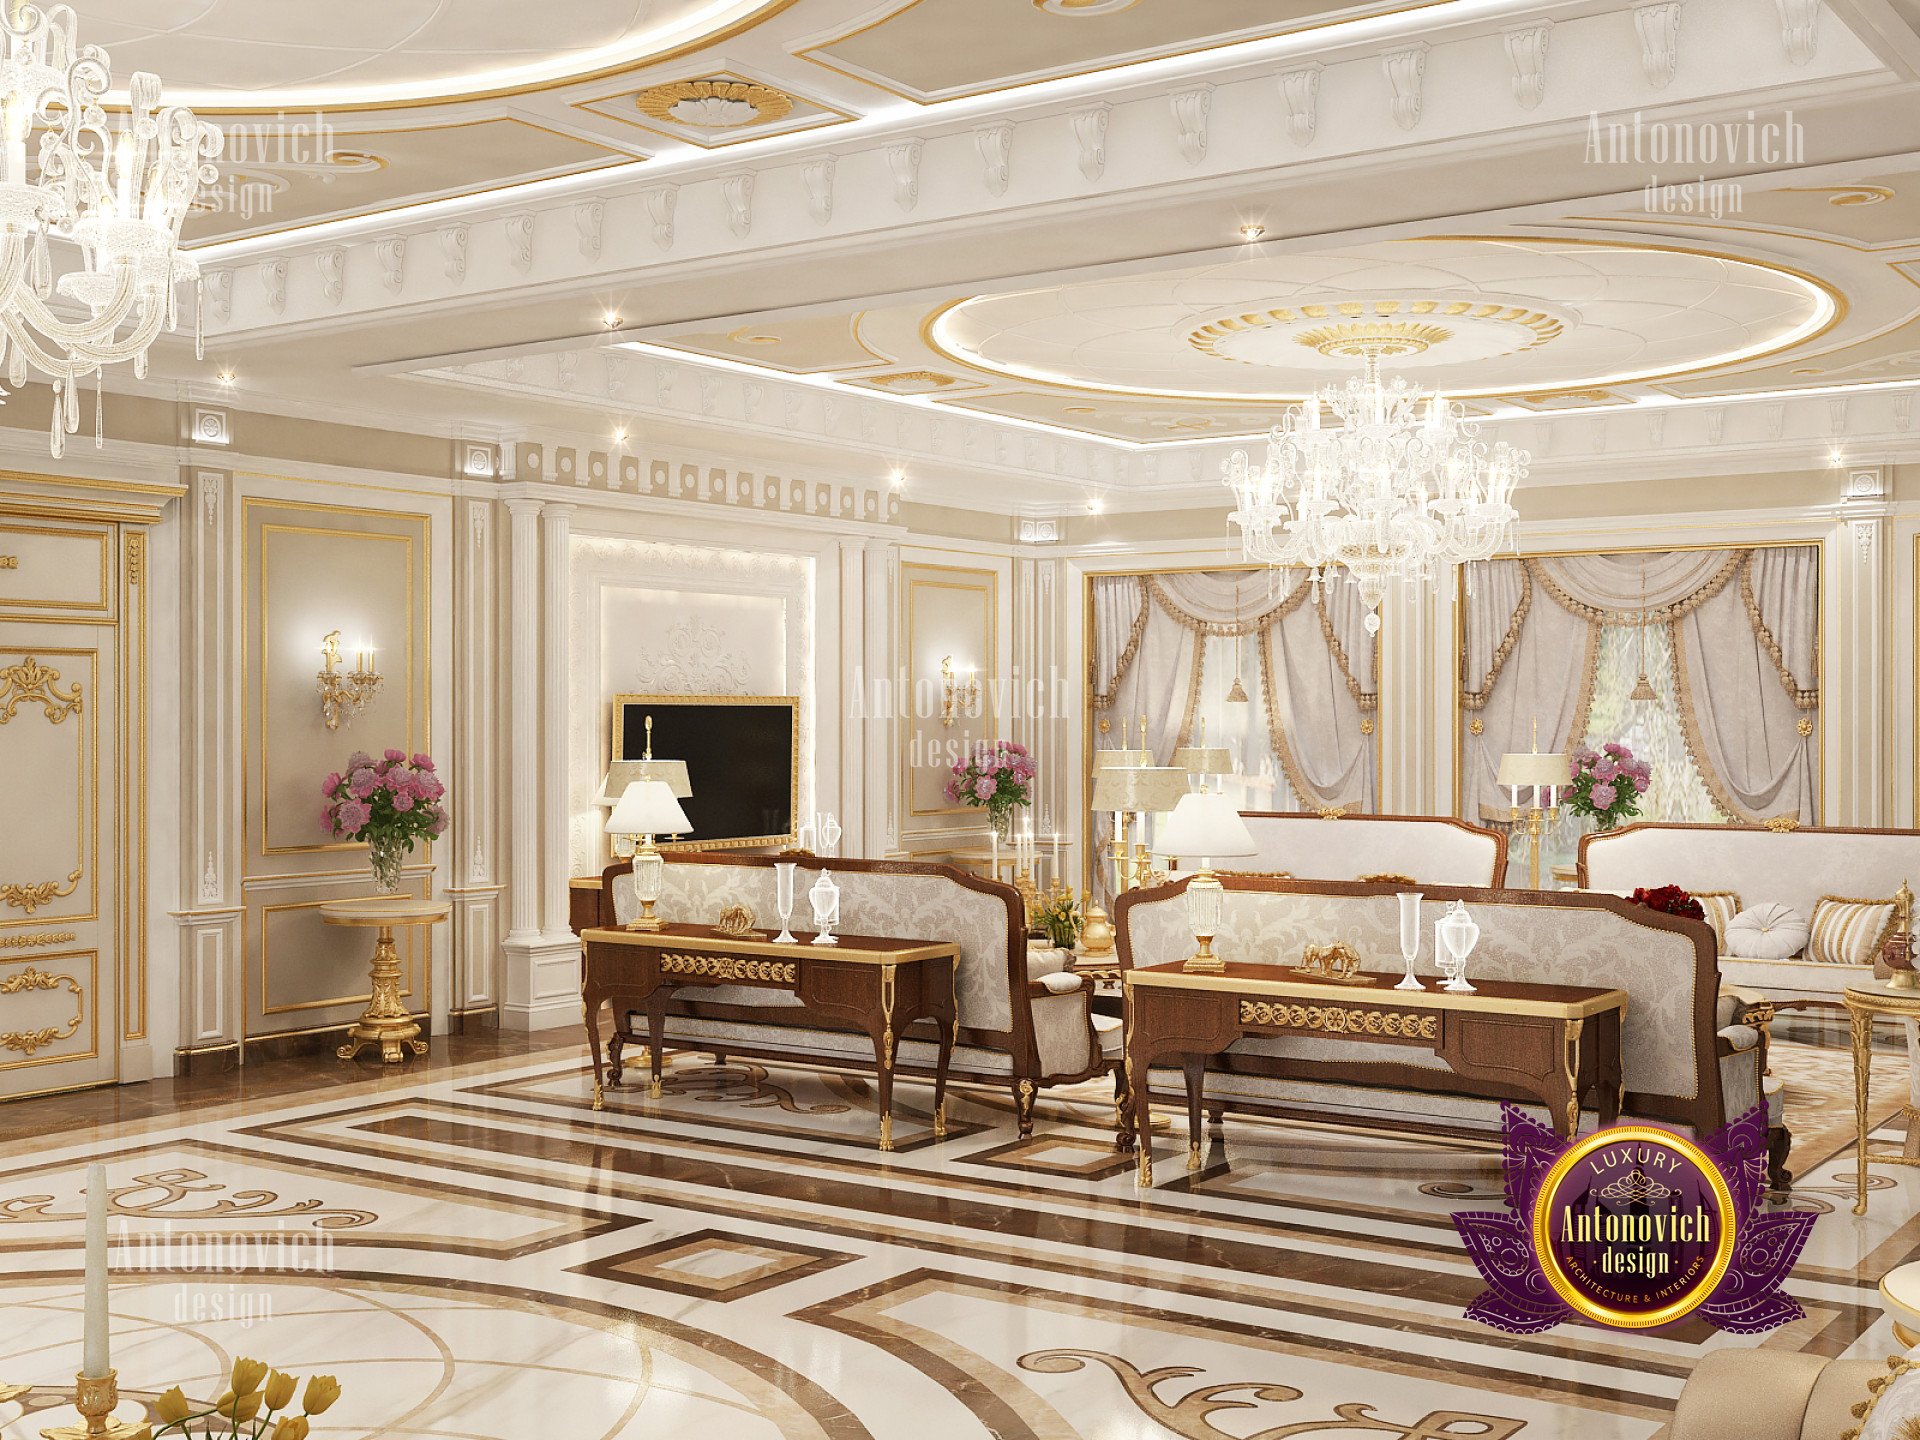 Beautiful living room interior luxury interior design